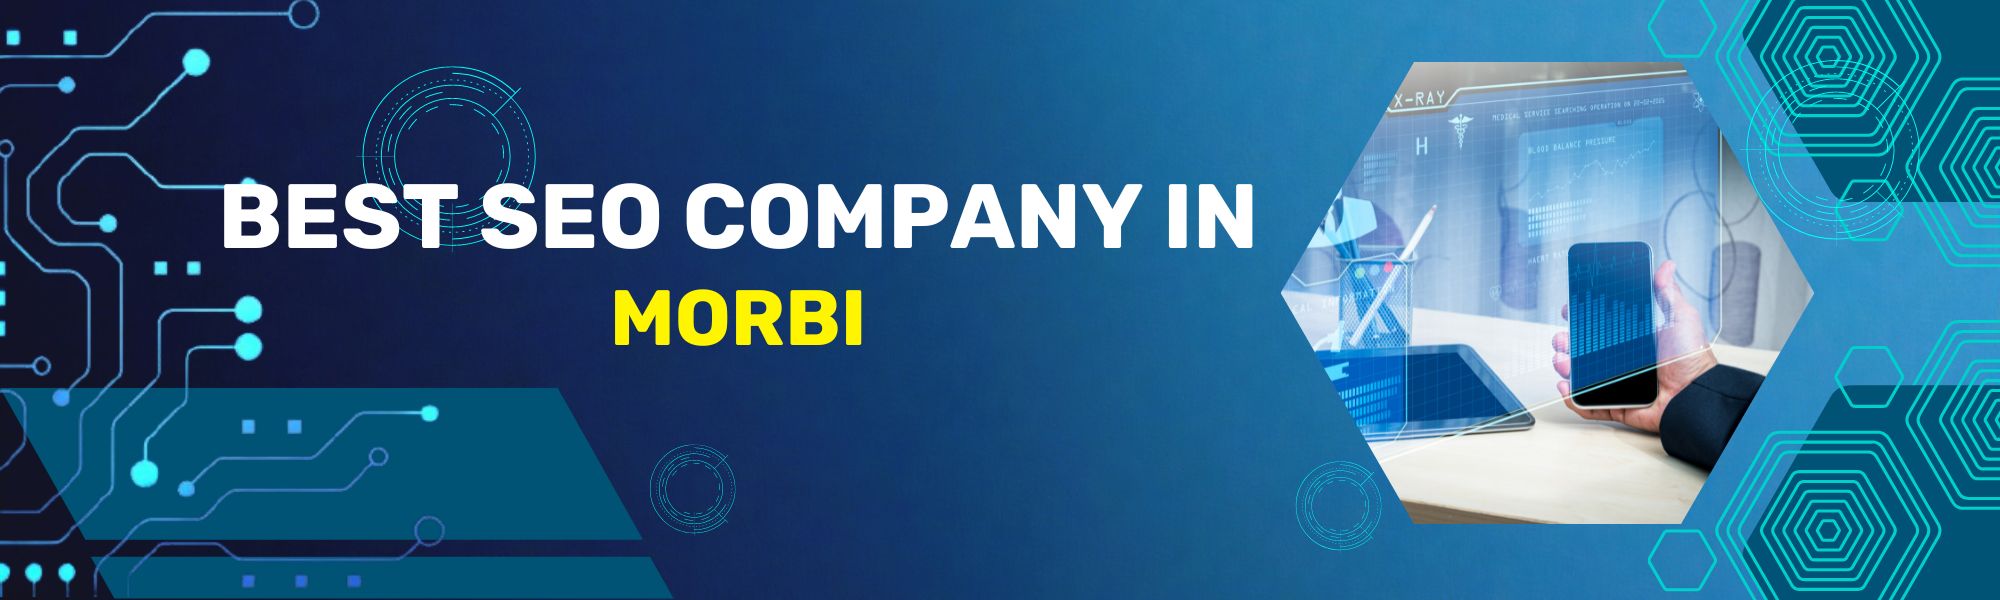 Best SEO Company In Morbi